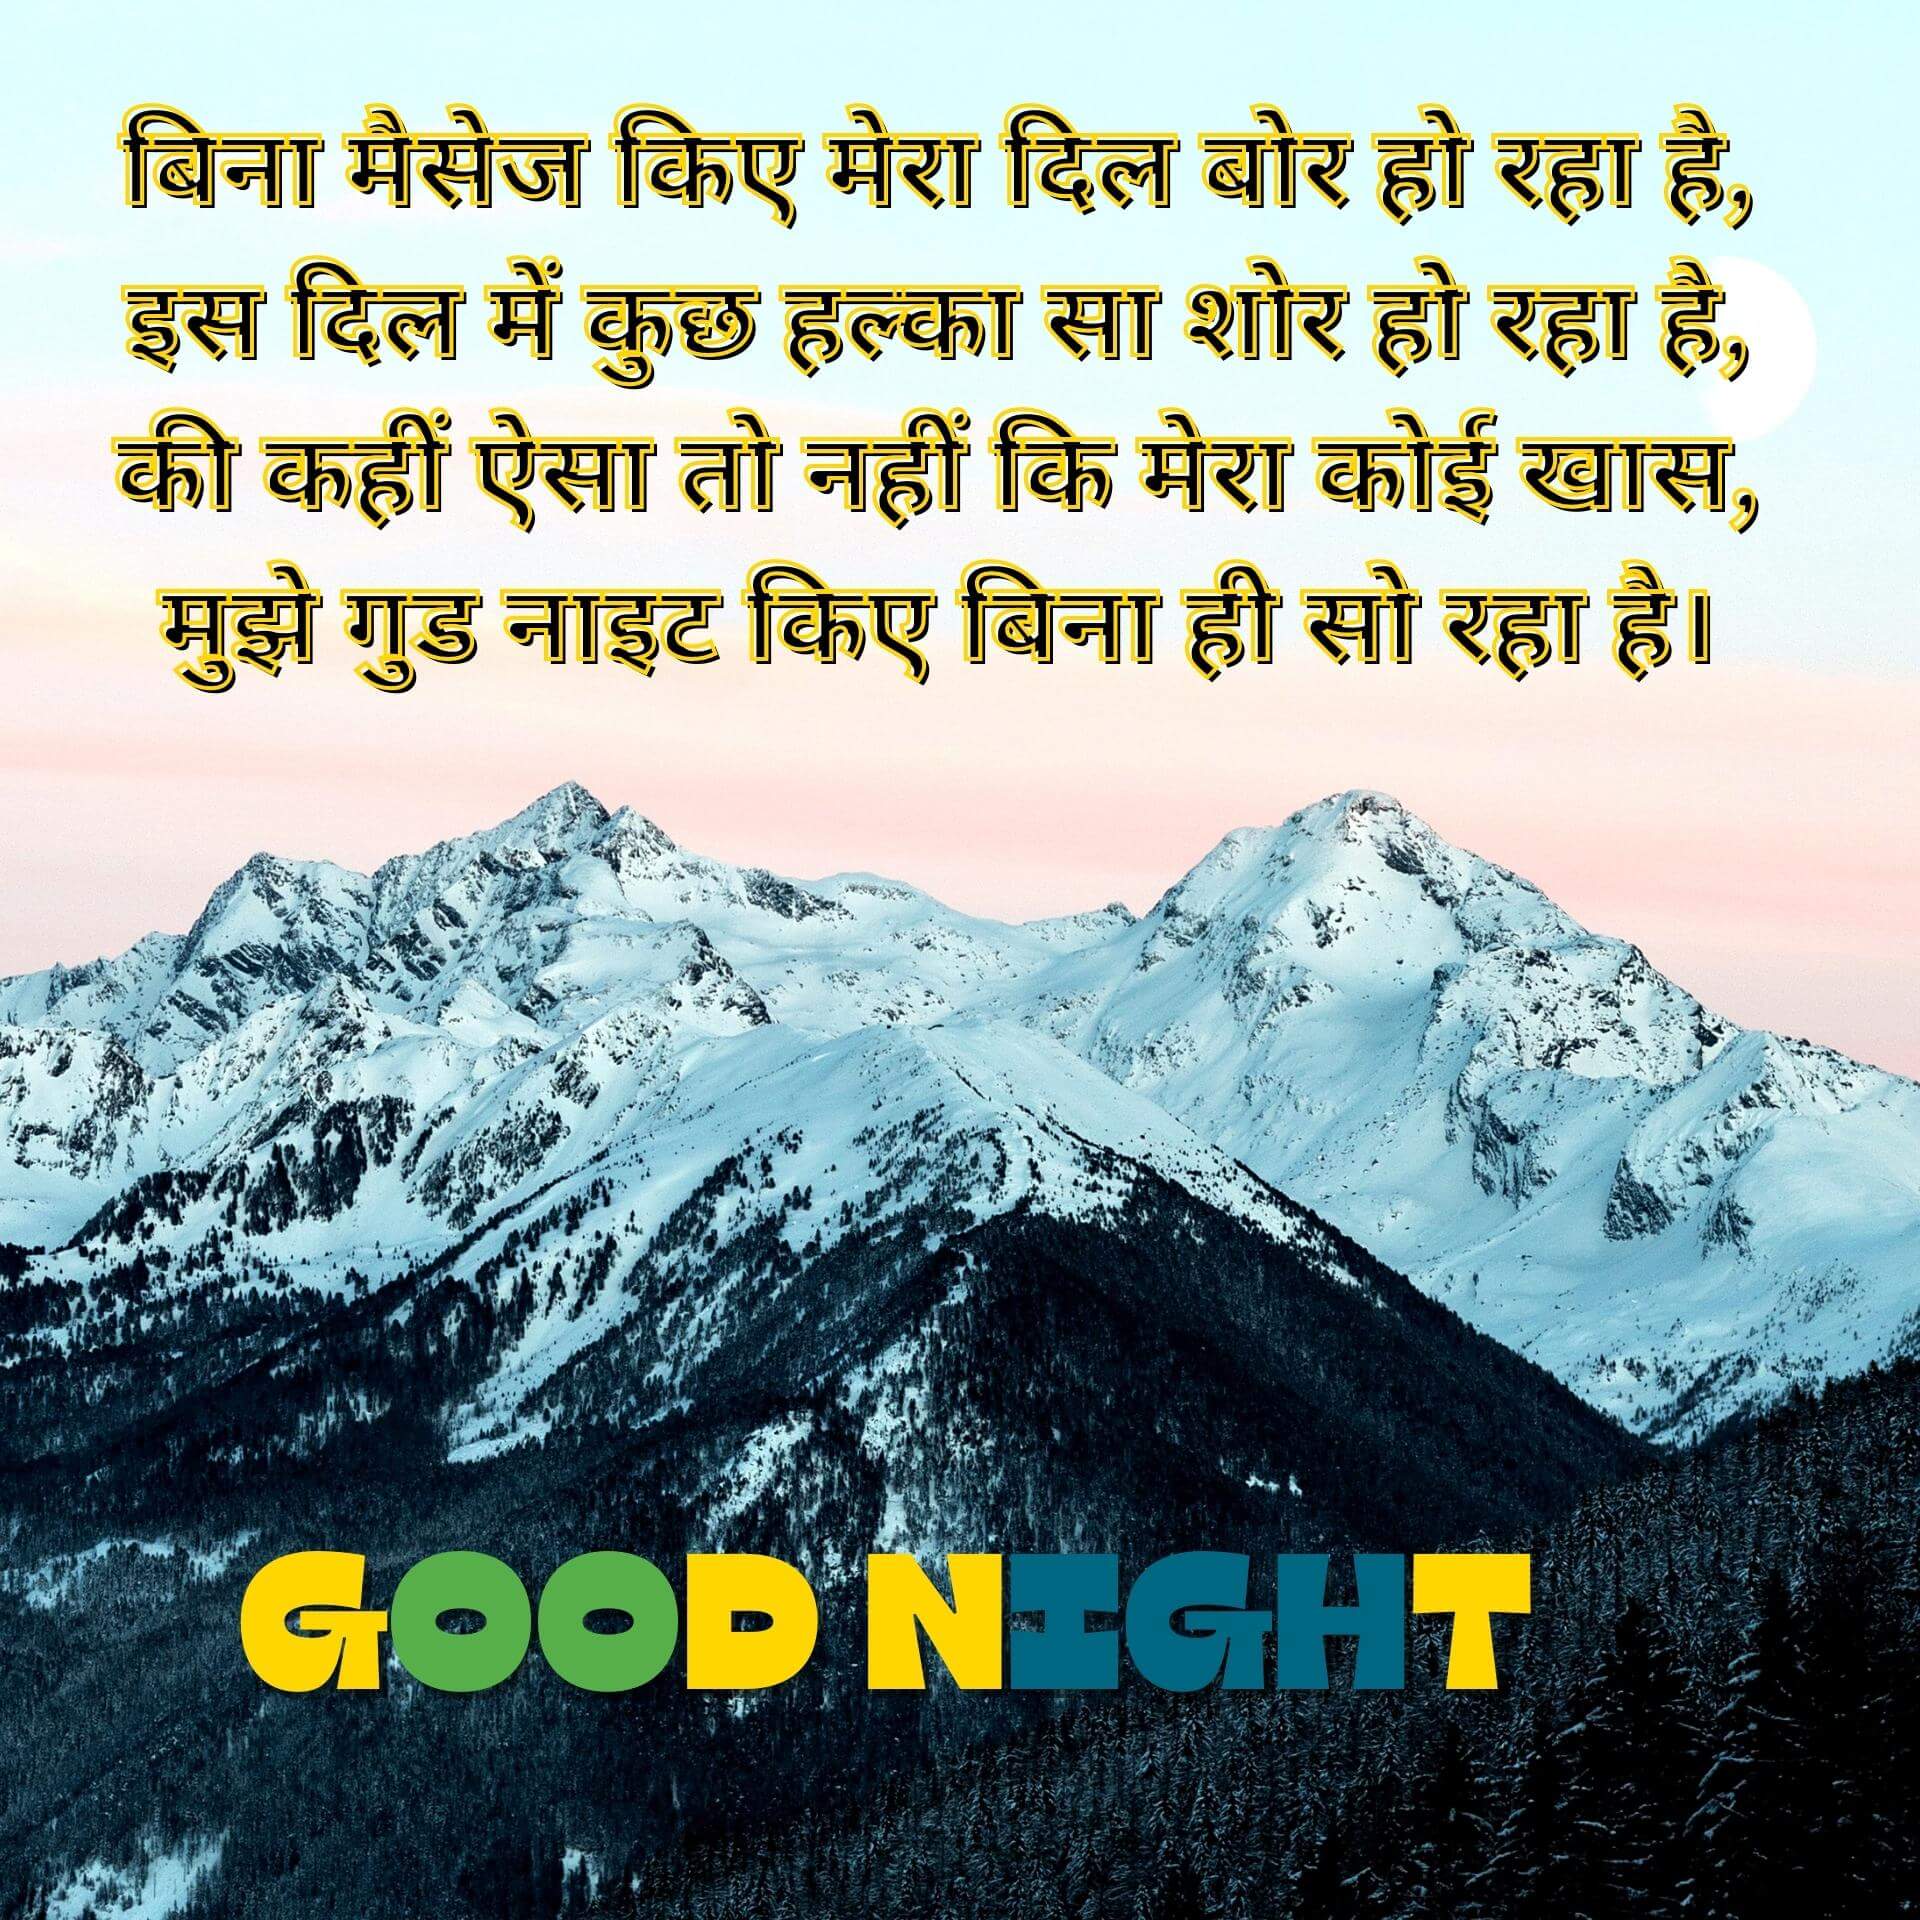 Hindi Shayari Good Night Wallpaper Free Download